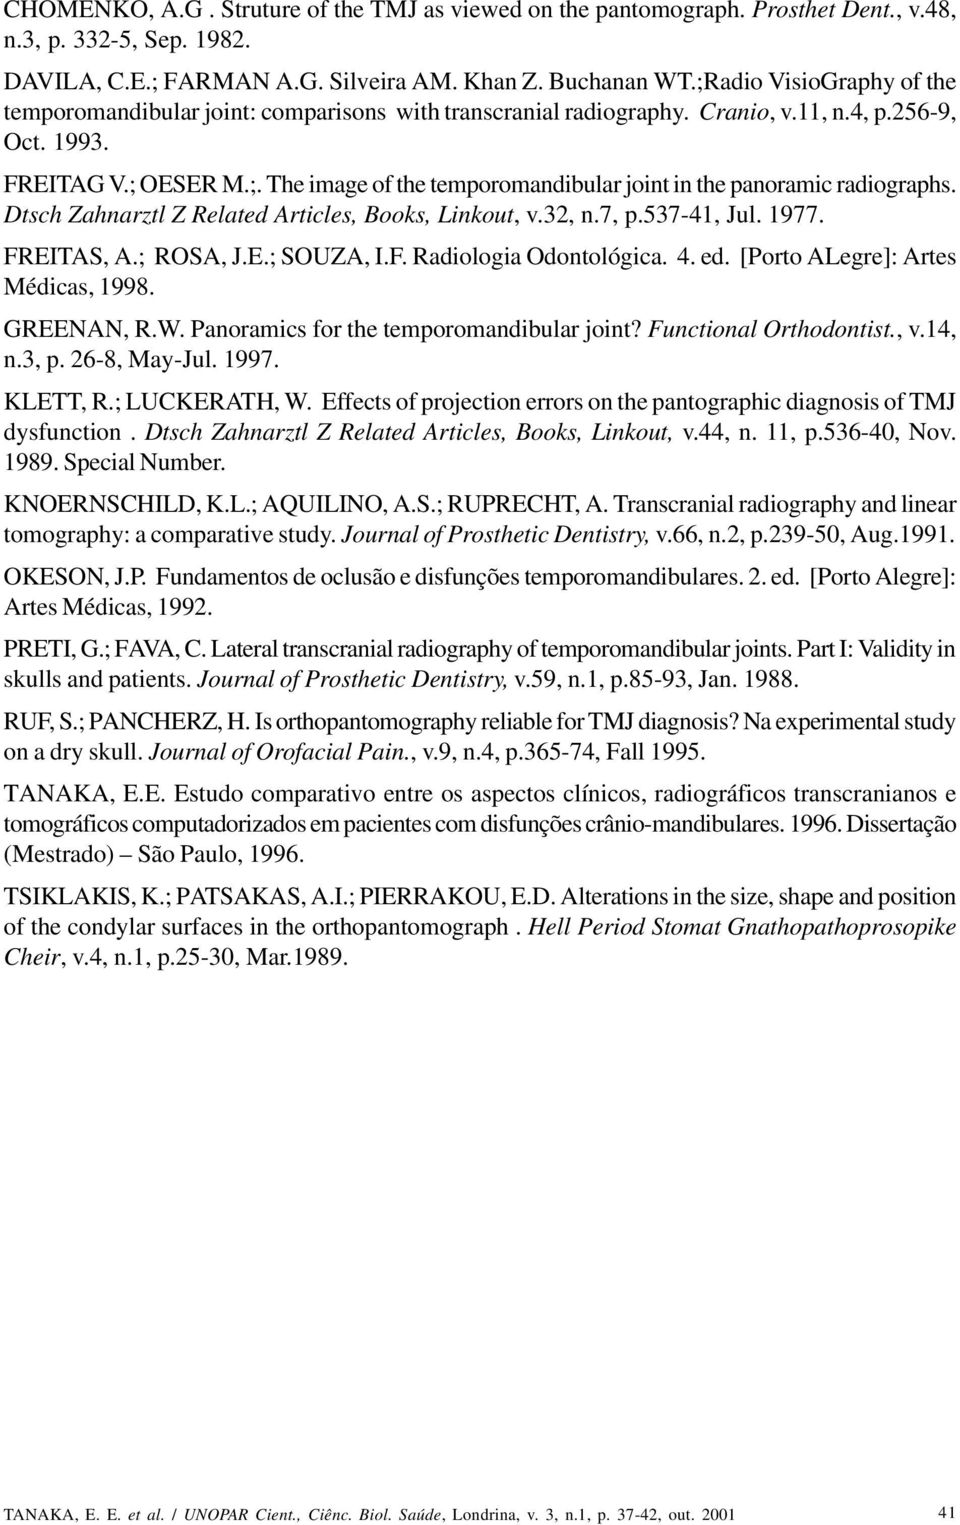 Dtsch Zahnarztl Z Related Articles, Books, Linkout, v.32, n.7, p.537-41, Jul. 1977. FREITAS, A.; ROSA, J.E.; SOUZA, I.F. Radiologia Odontológica. 4. ed. [Porto ALegre]: Artes Médicas, 1998.